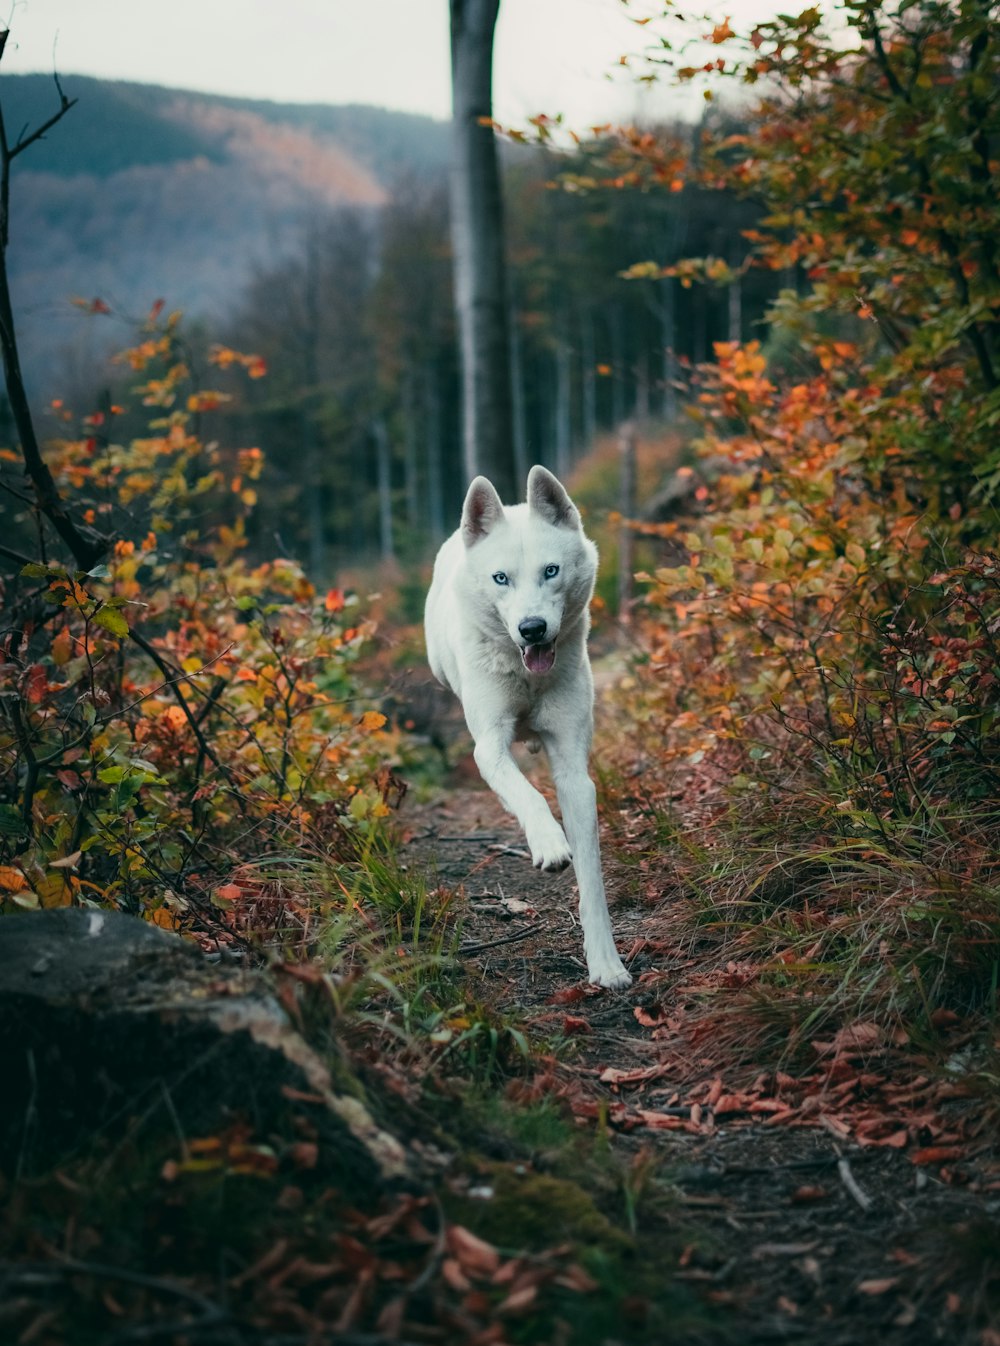 lobo blanco corriendo cerca de plantas y árboles verdes